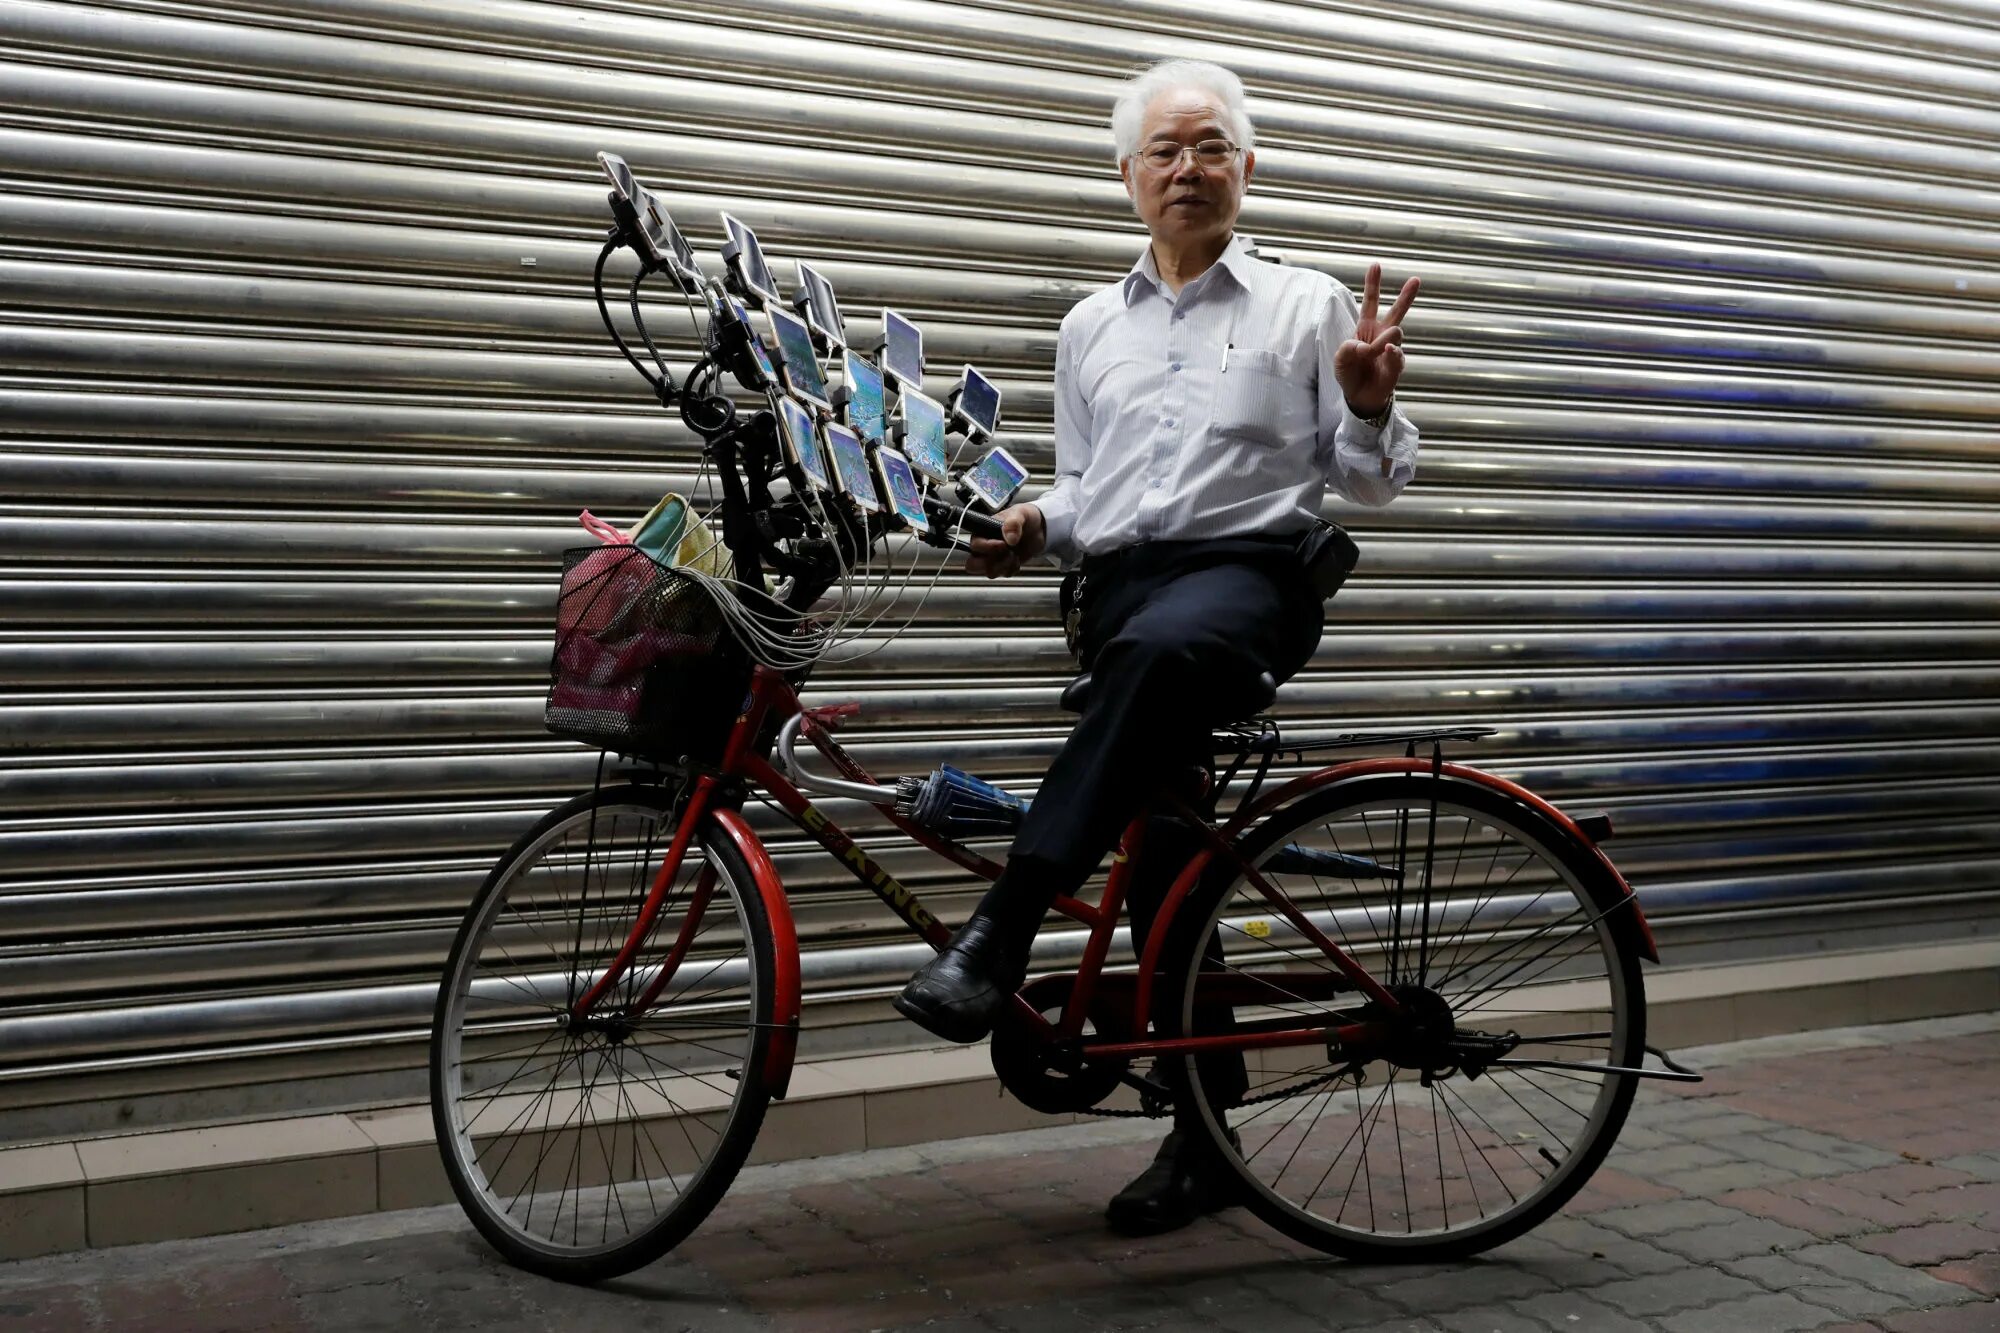 Дедуля на велосипеде. Дед на велосипеде покемон го. Дедушка на велосипеде покемон го. Китаец на велосипеде с кучей смартфонов. Настолько понравился